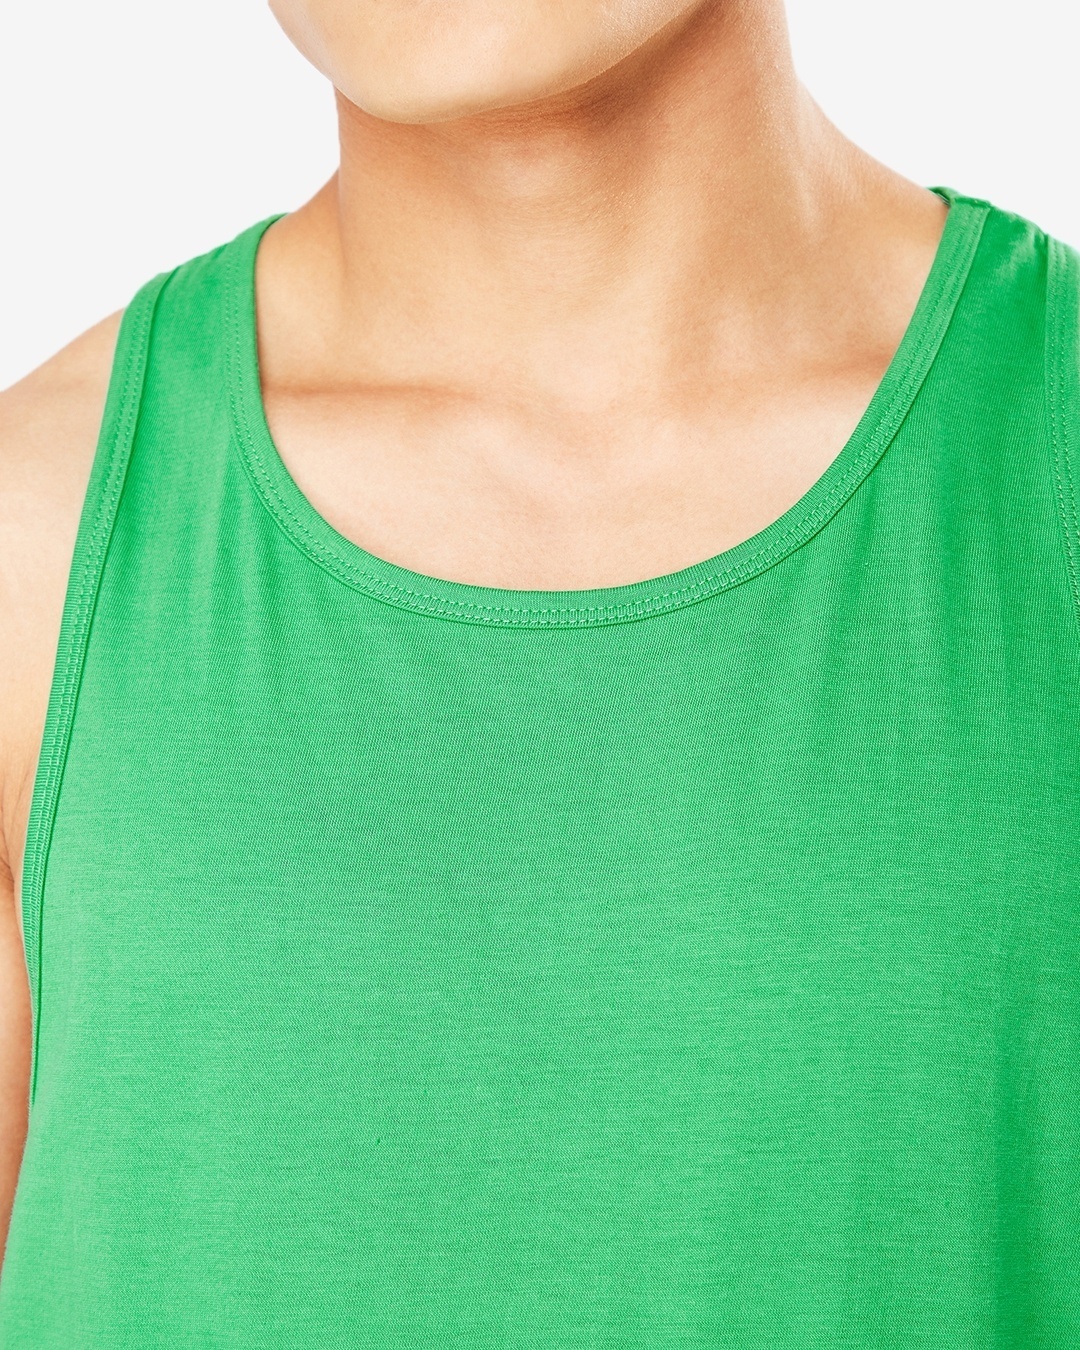 Shop Men's Varsity Green Deep Cut Vest